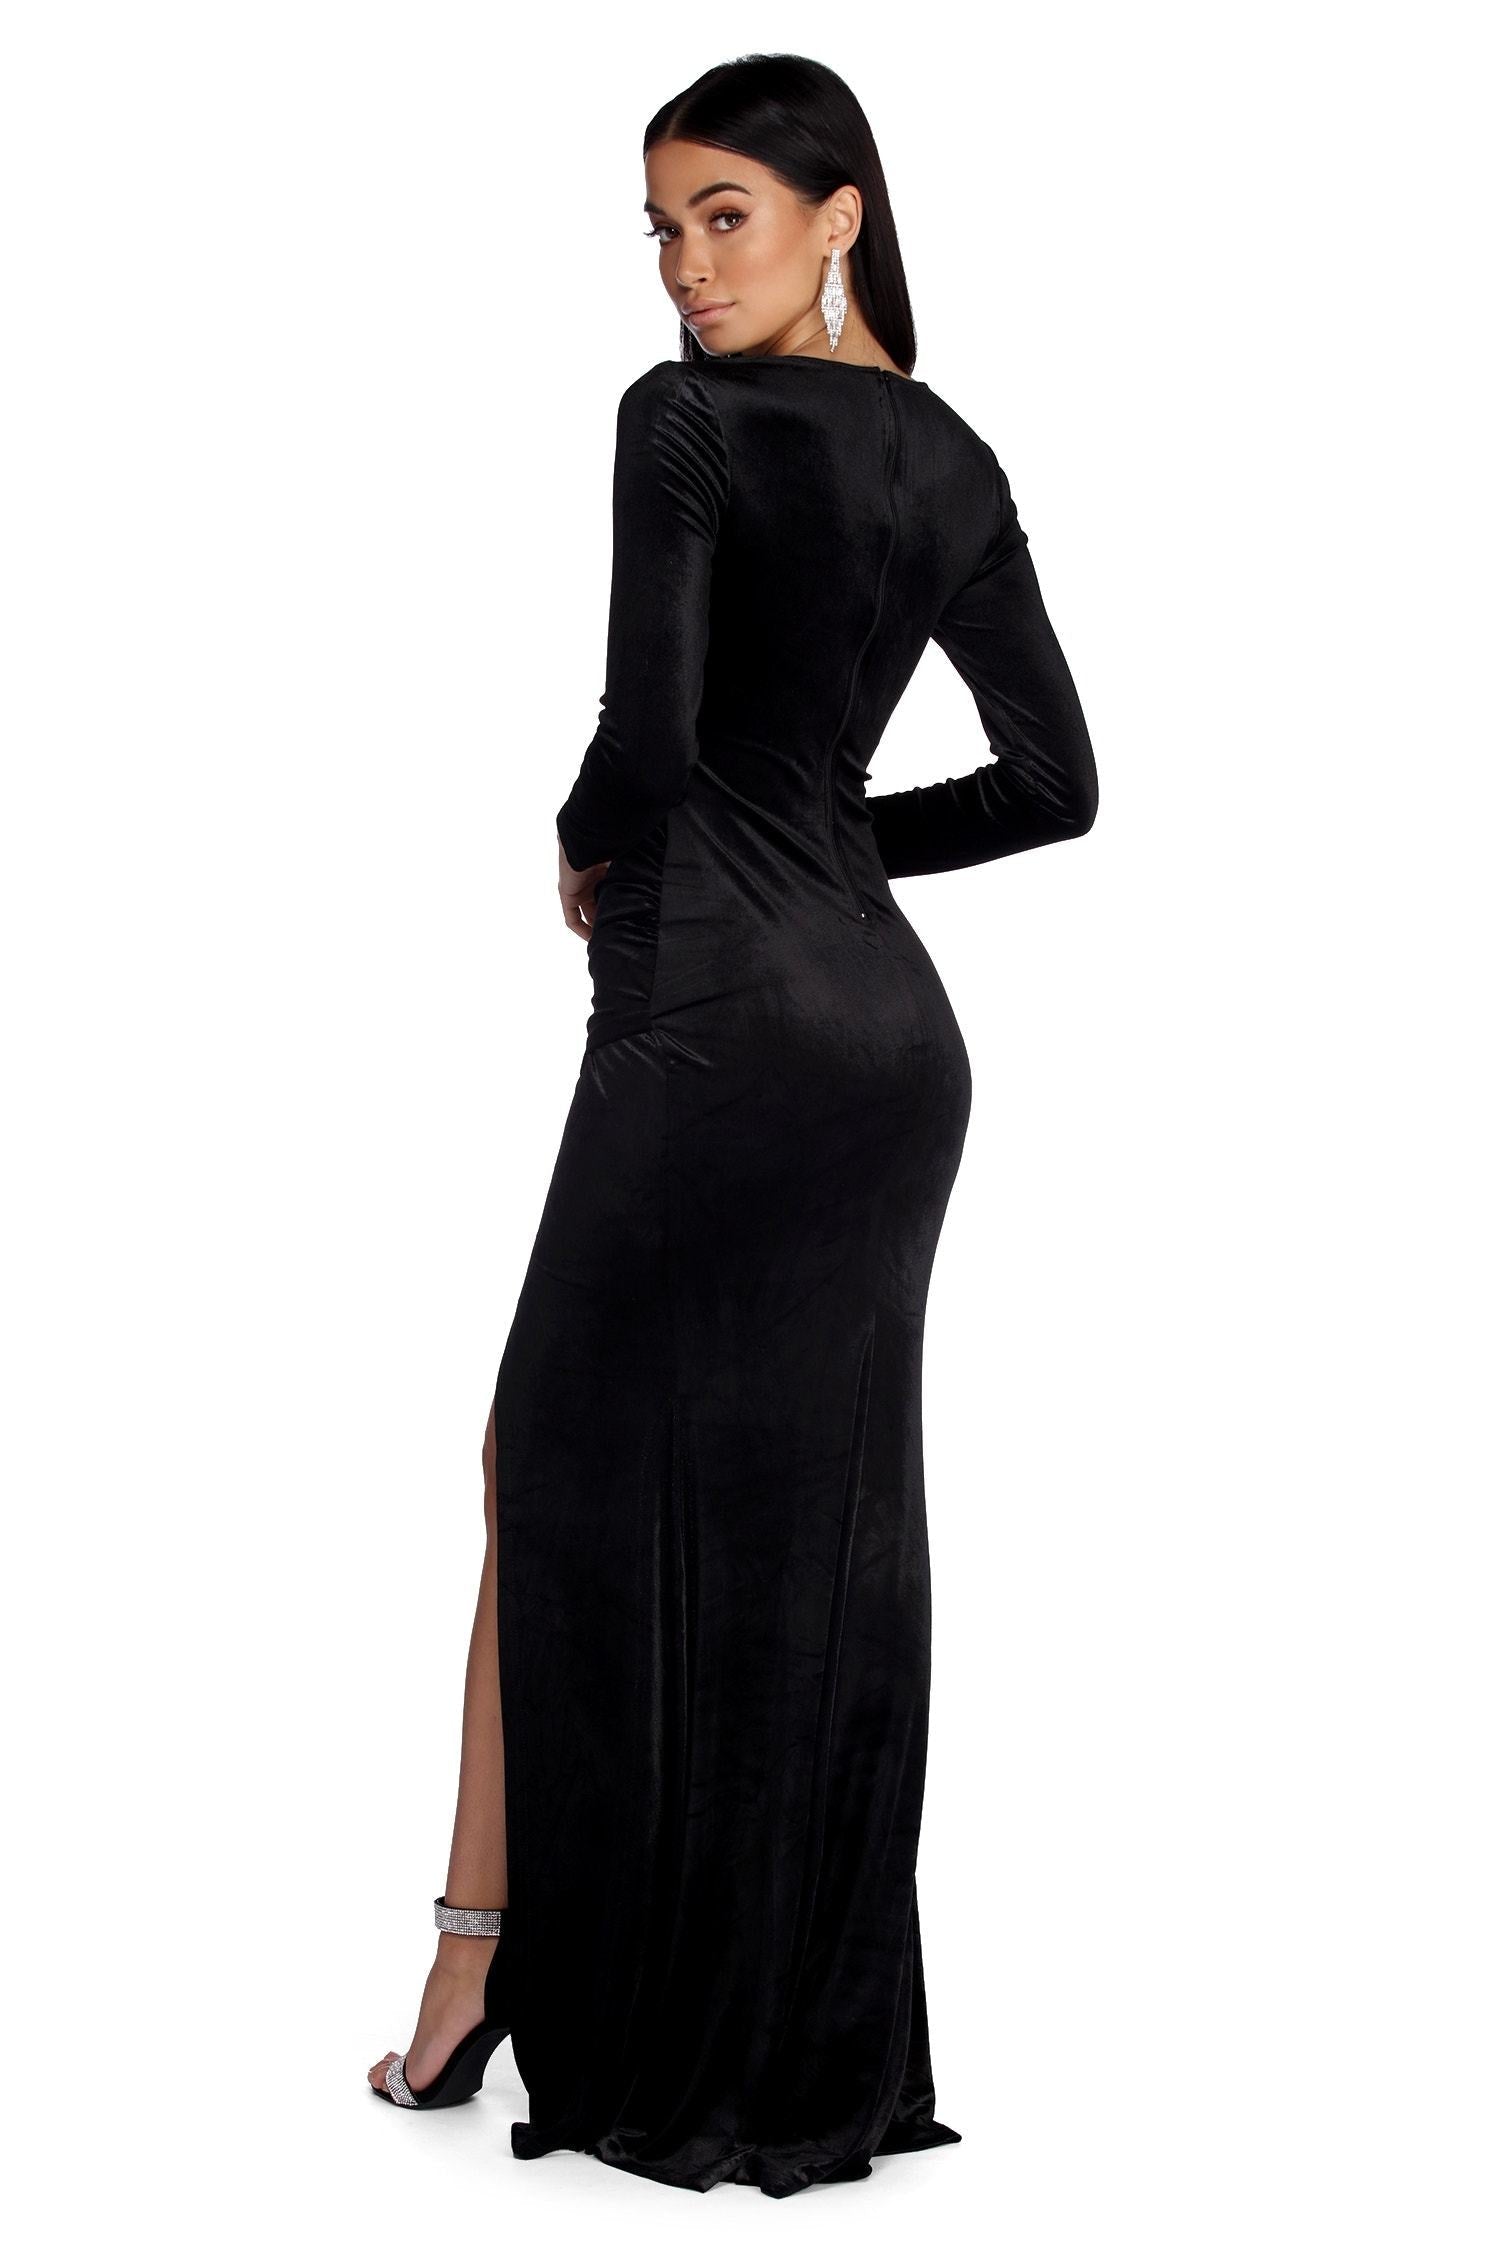 Belinda Formal Velvet Dresses